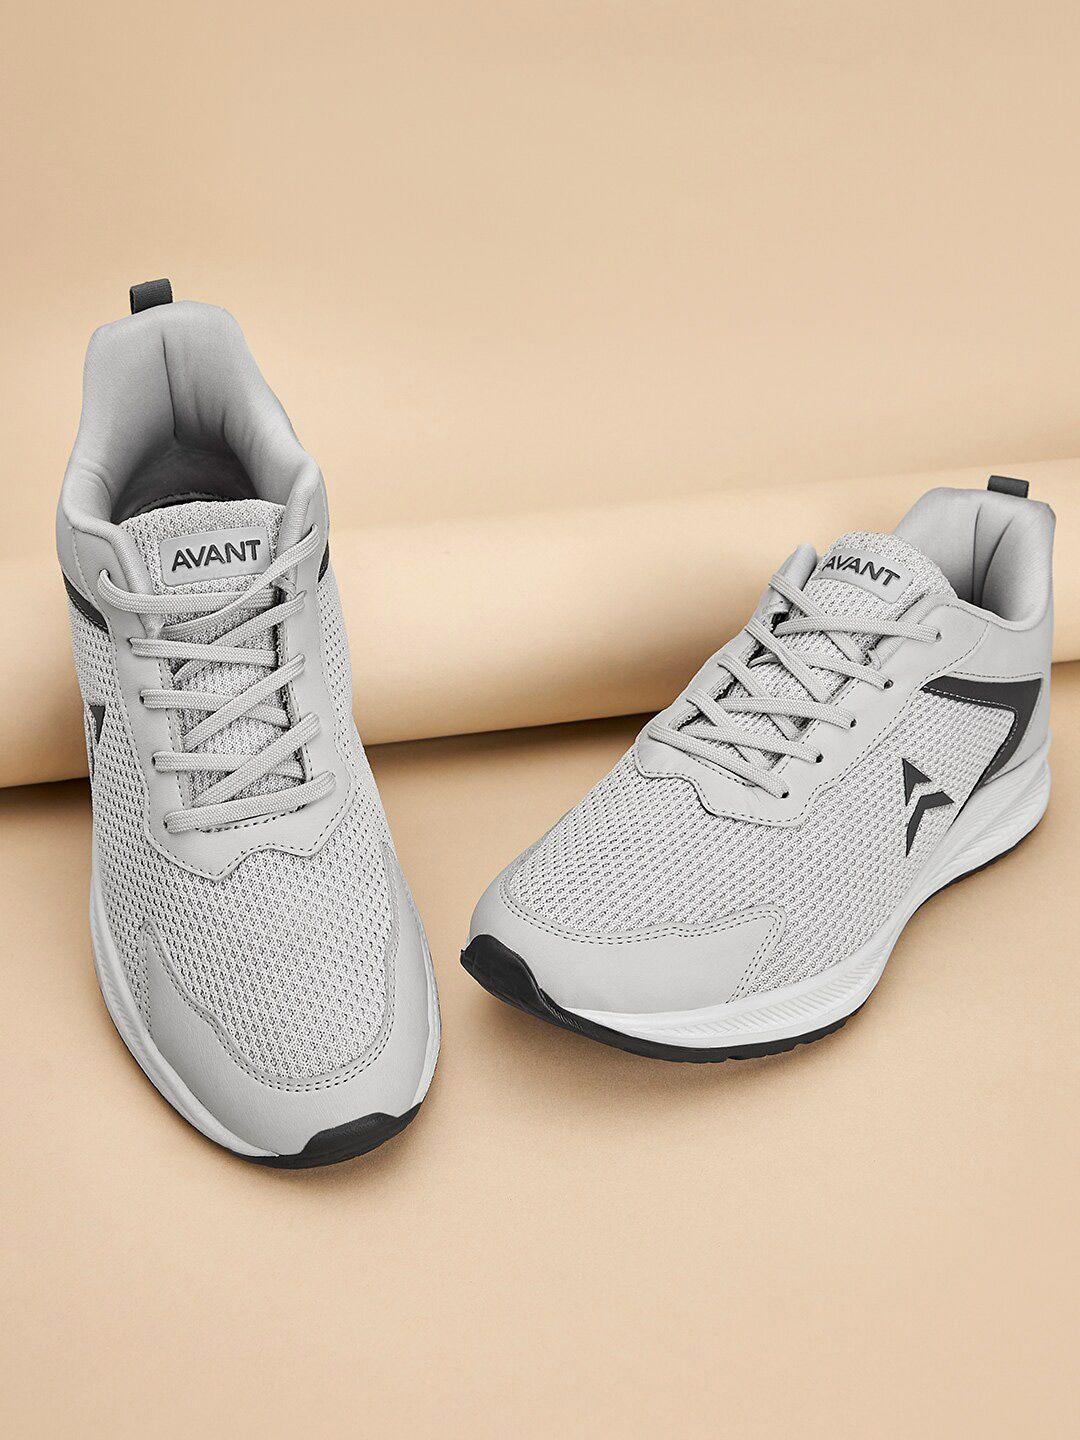 avant men xtreme lightweight mesh running shoes